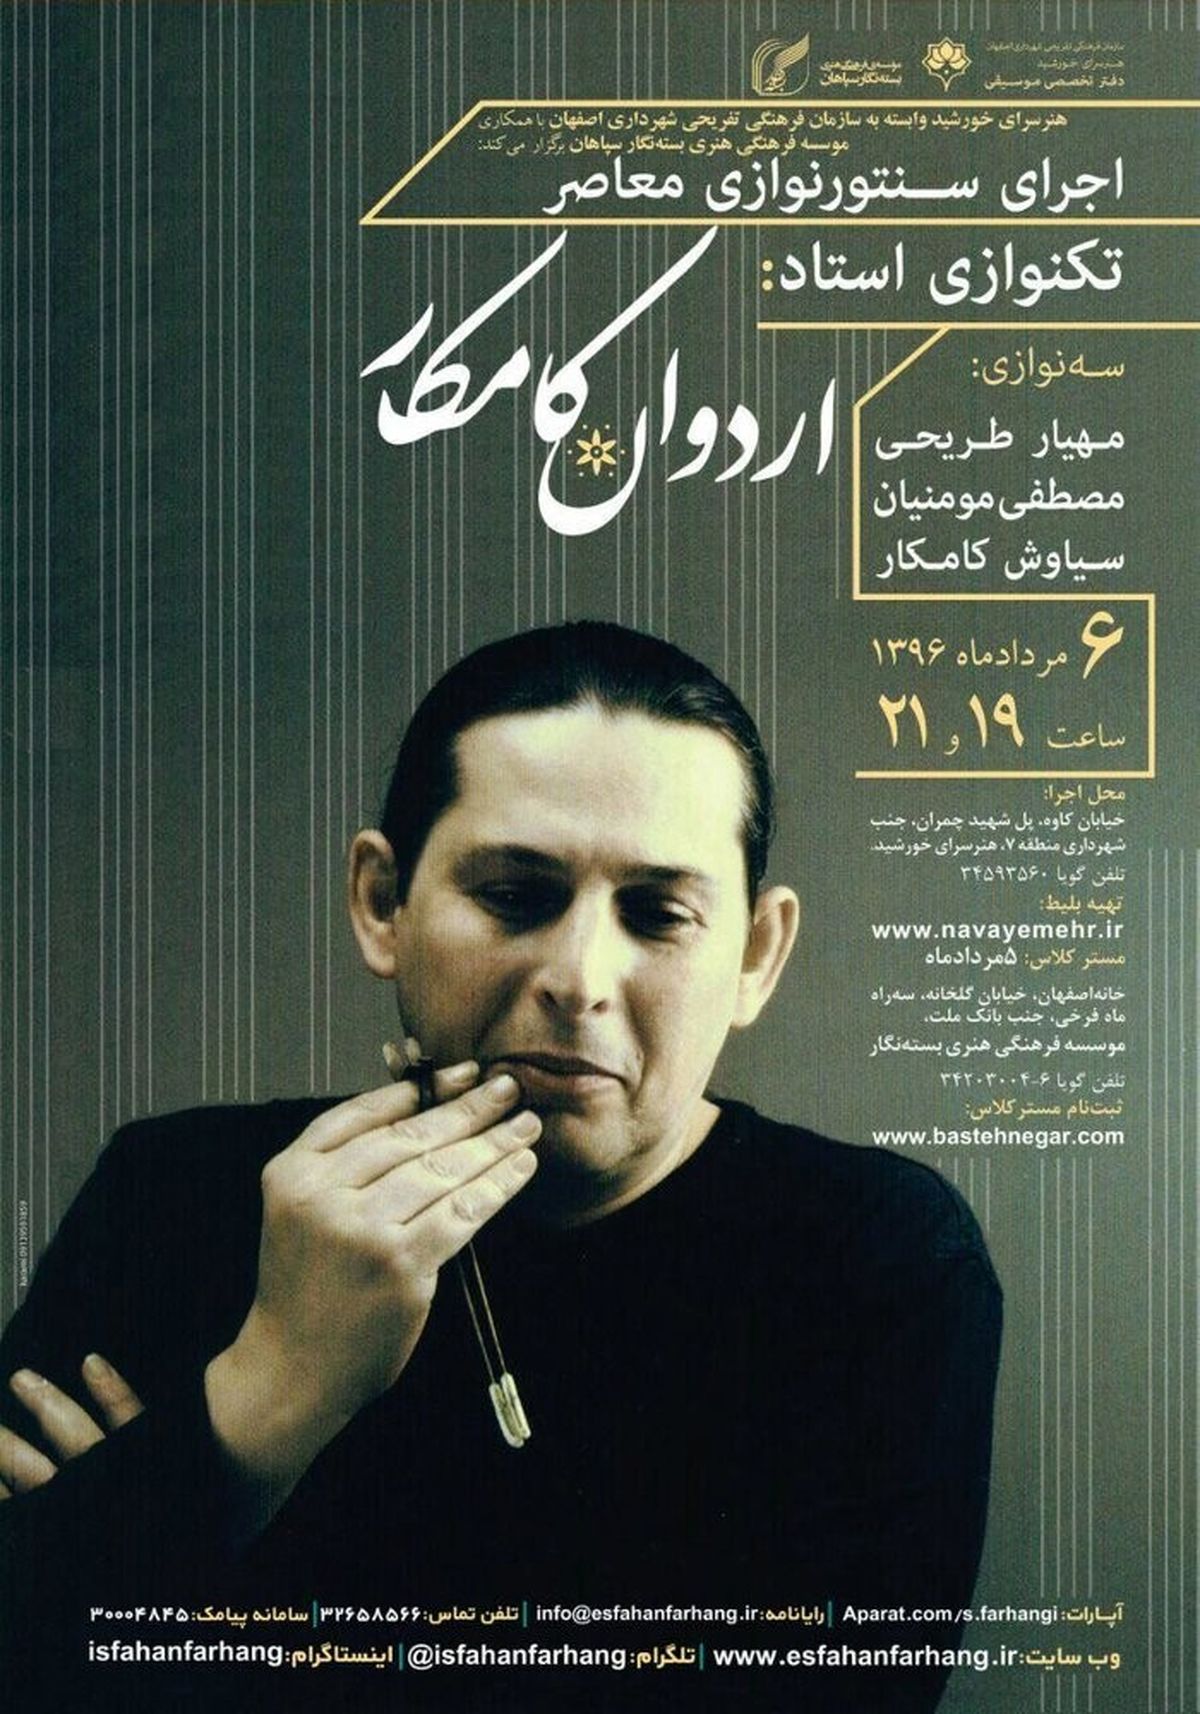 اجرای سنتور نوازی معاصر توسط «اردوان کامکار» در اصفهان